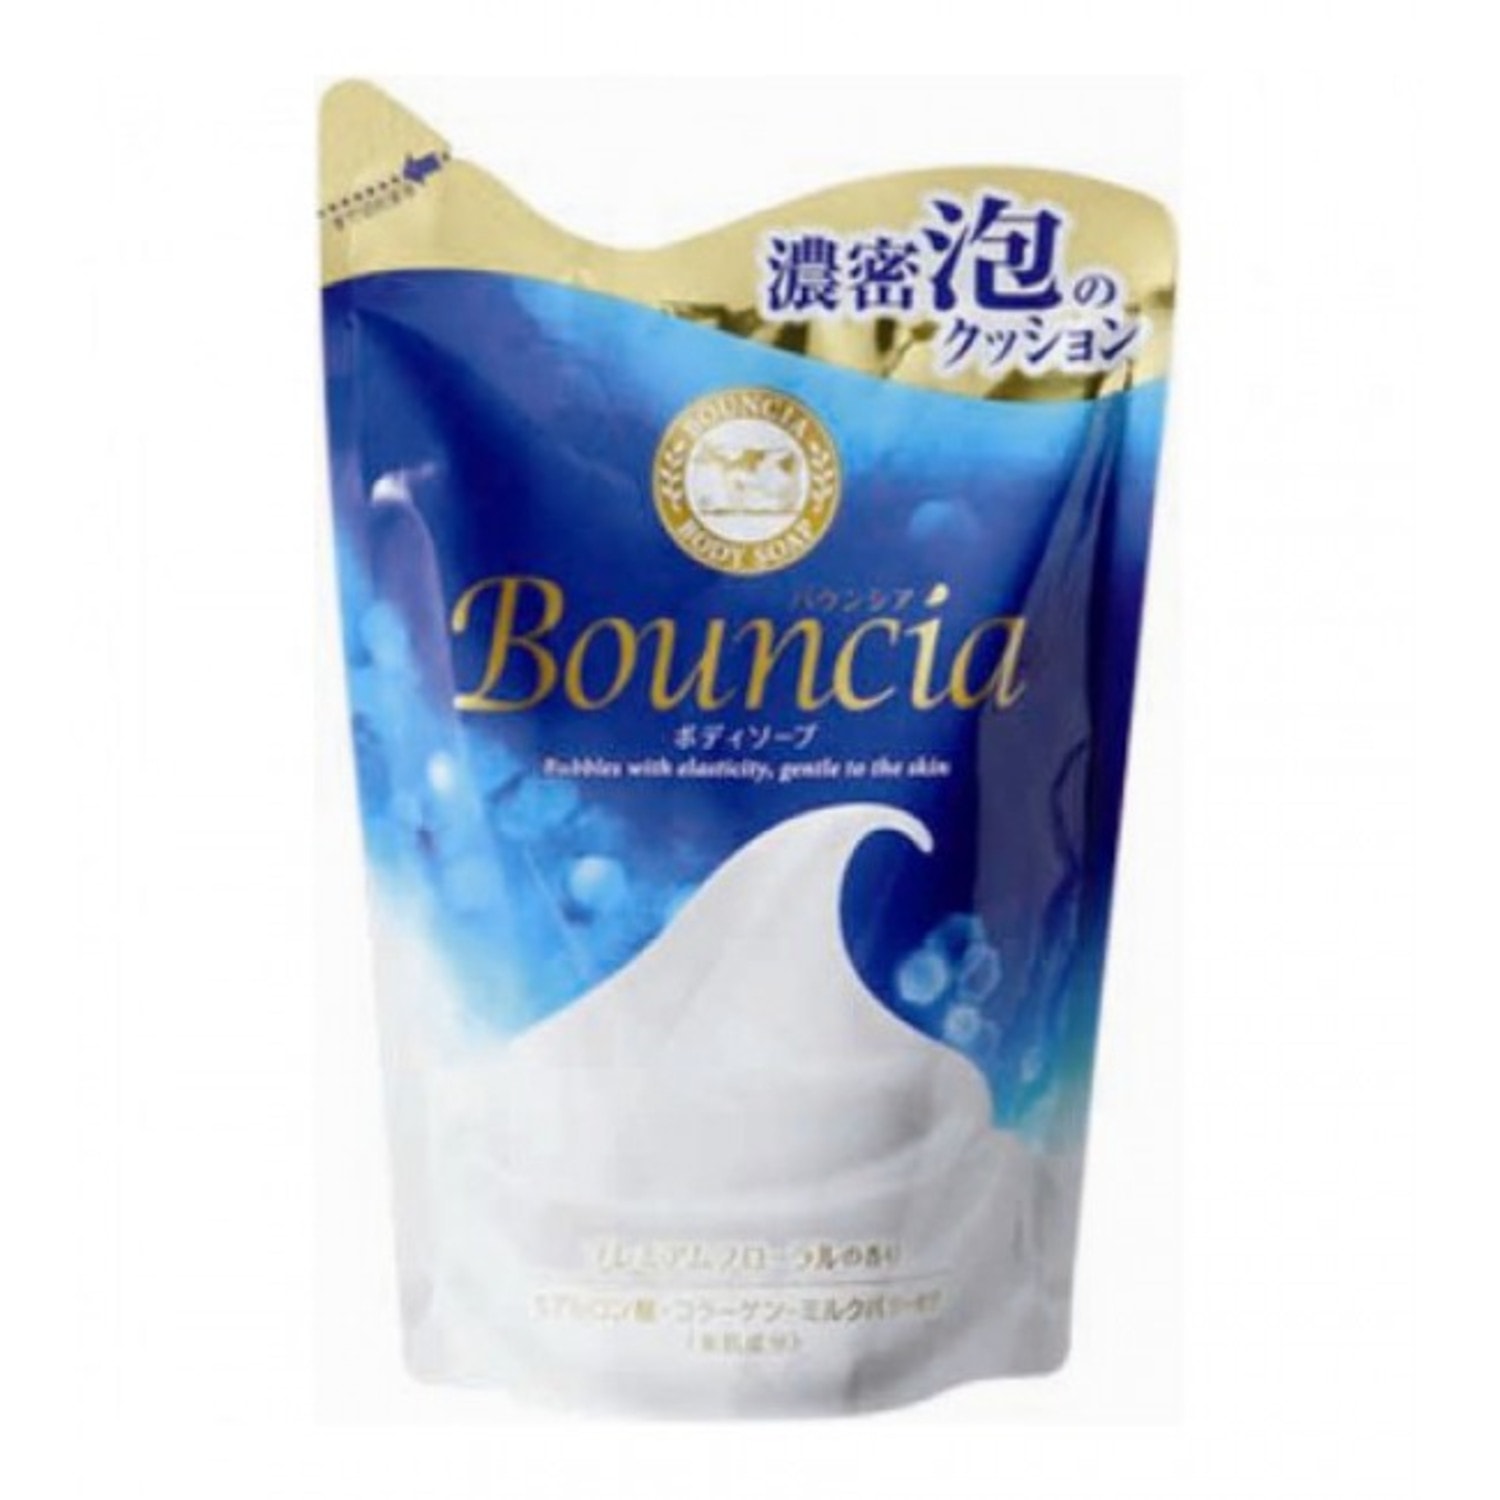 Cow Brand "Bouncia" Жидкое увлажняющее мыло для тела c свежим ароматом , сменная упаковка, 400мл. / 008266